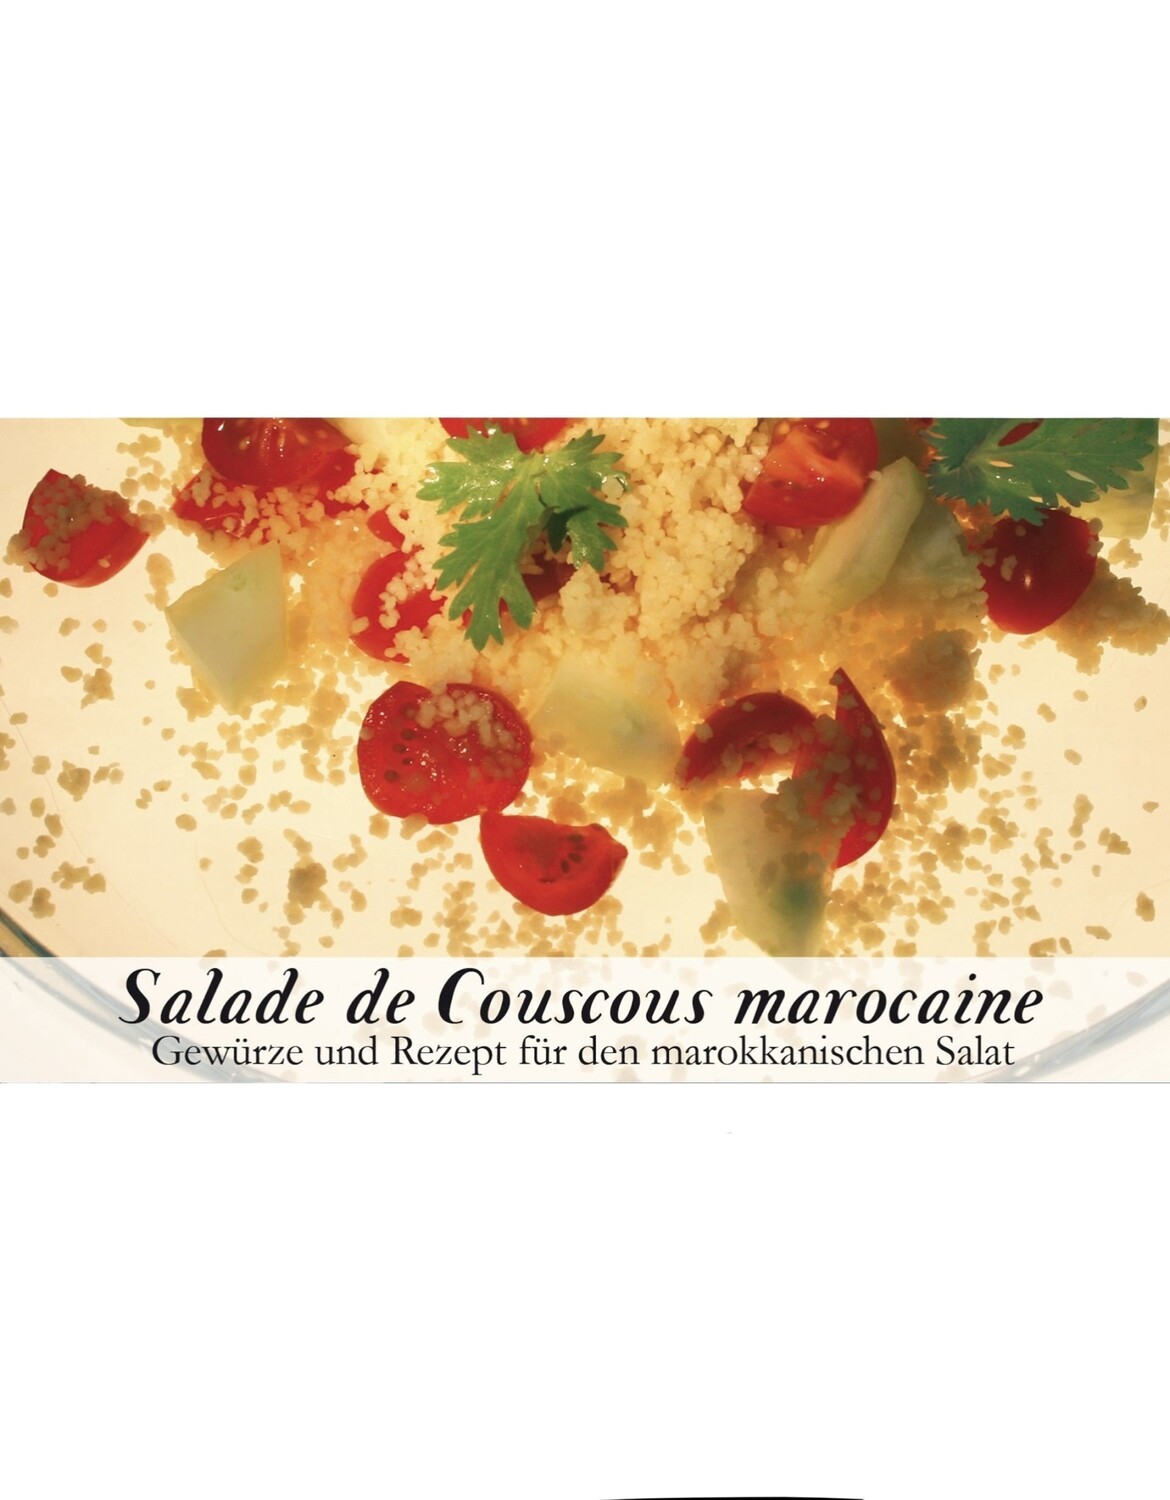 Salade de Couscous marocaine-Gewürzkasten (vegetarisch)